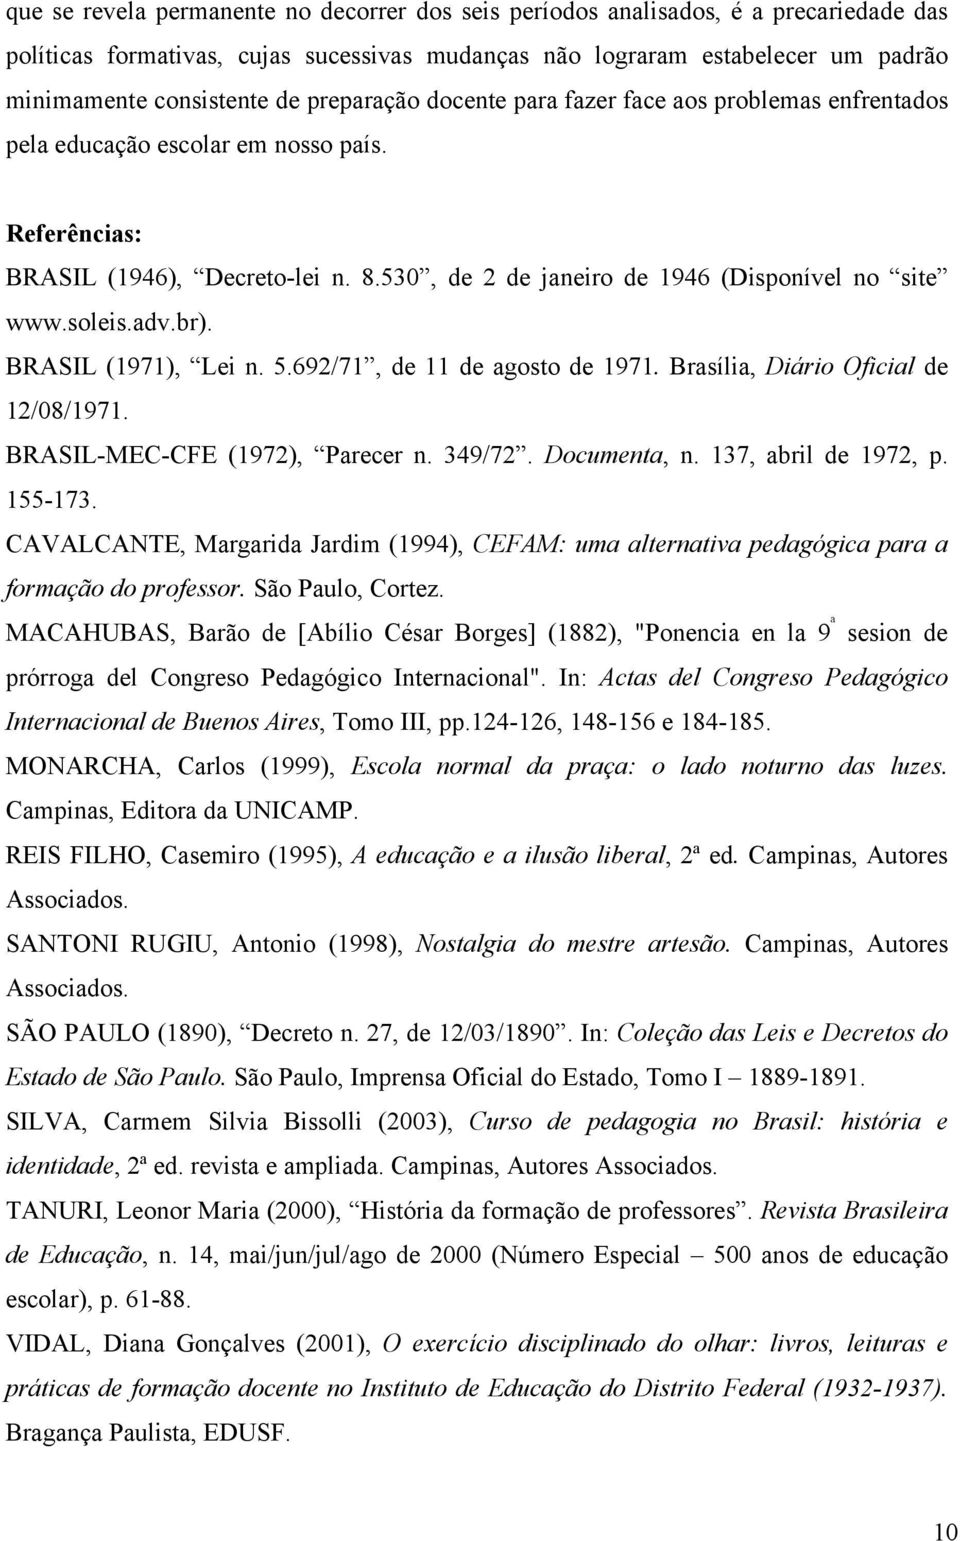 soleis.adv.br). BRASIL (1971), Lei n. 5.692/71, de 11 de agosto de 1971. Brasília, Diário Oficial de 12/08/1971. BRASIL-MEC-CFE (1972), Parecer n. 349/72. Documenta, n. 137, abril de 1972, p. 155-173.